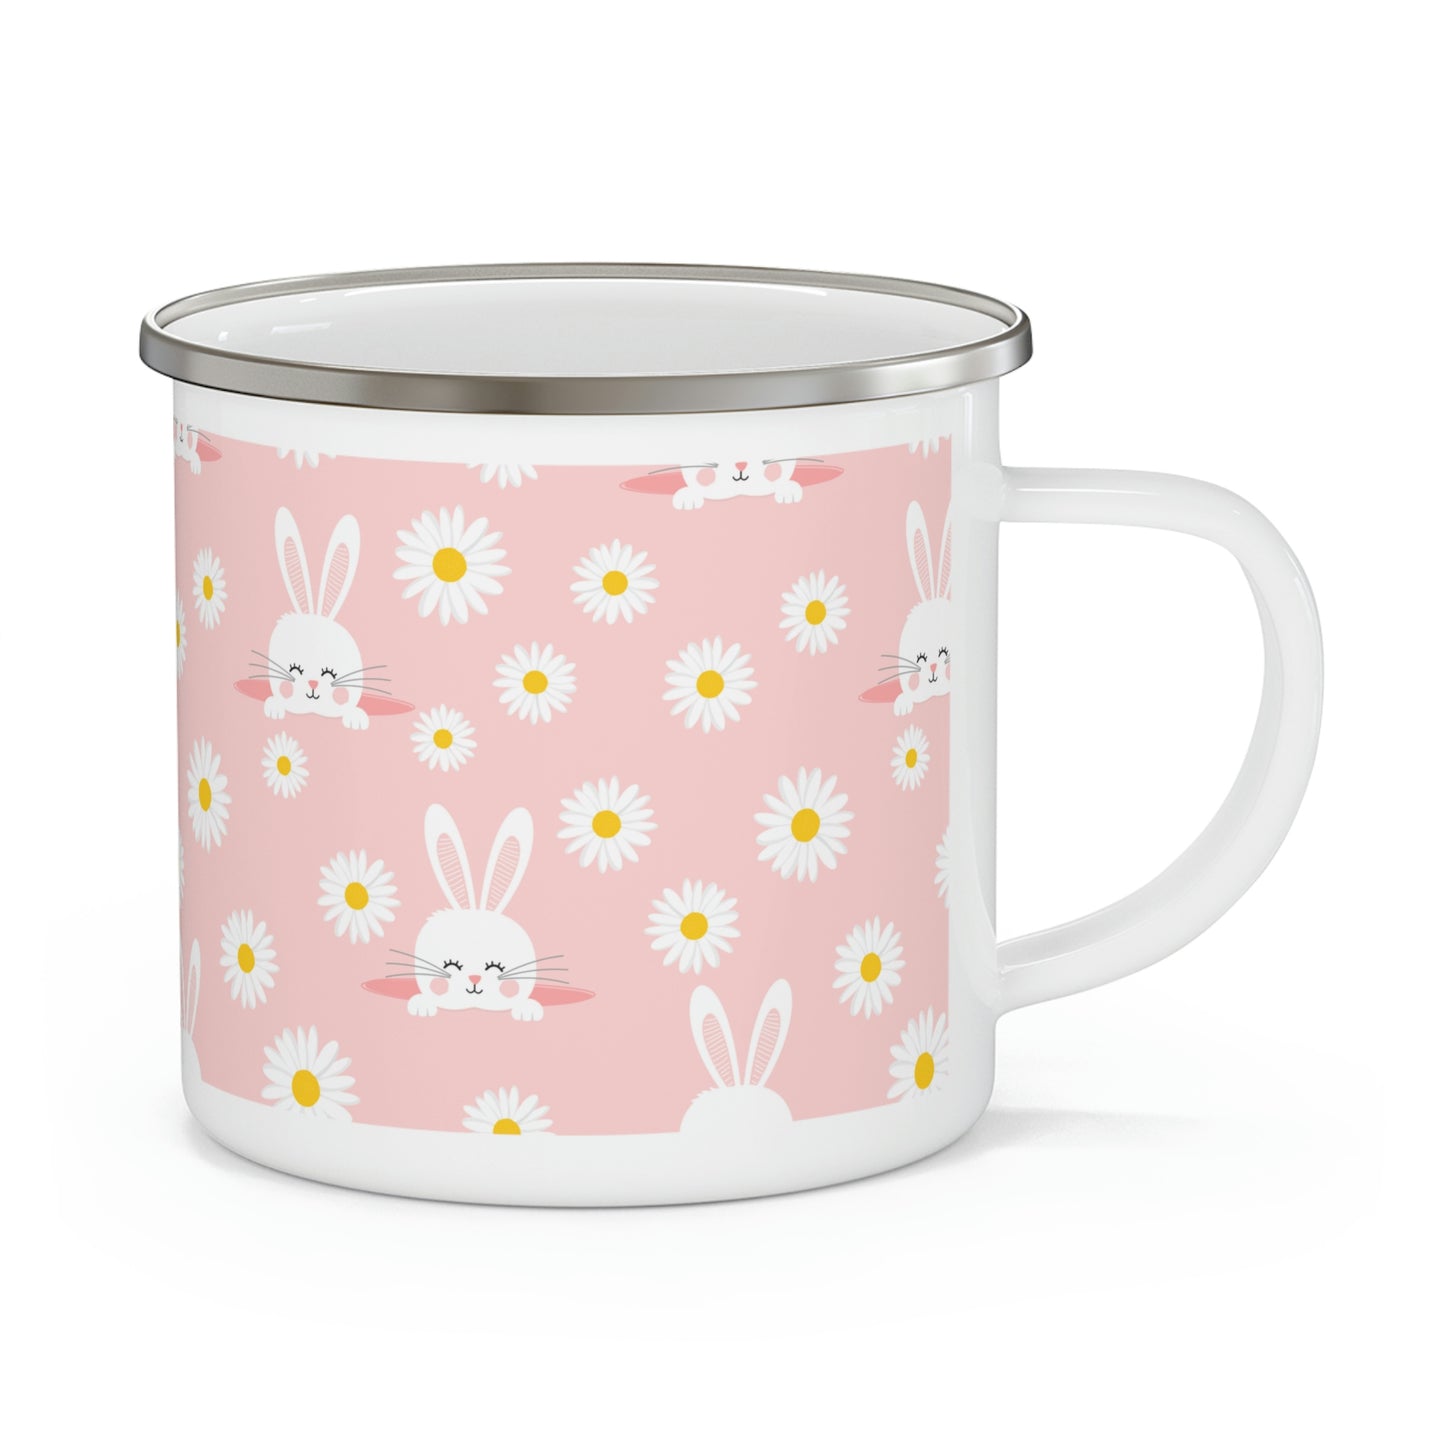 Smiling Bunnies and Daisies Enamel Camping Mug